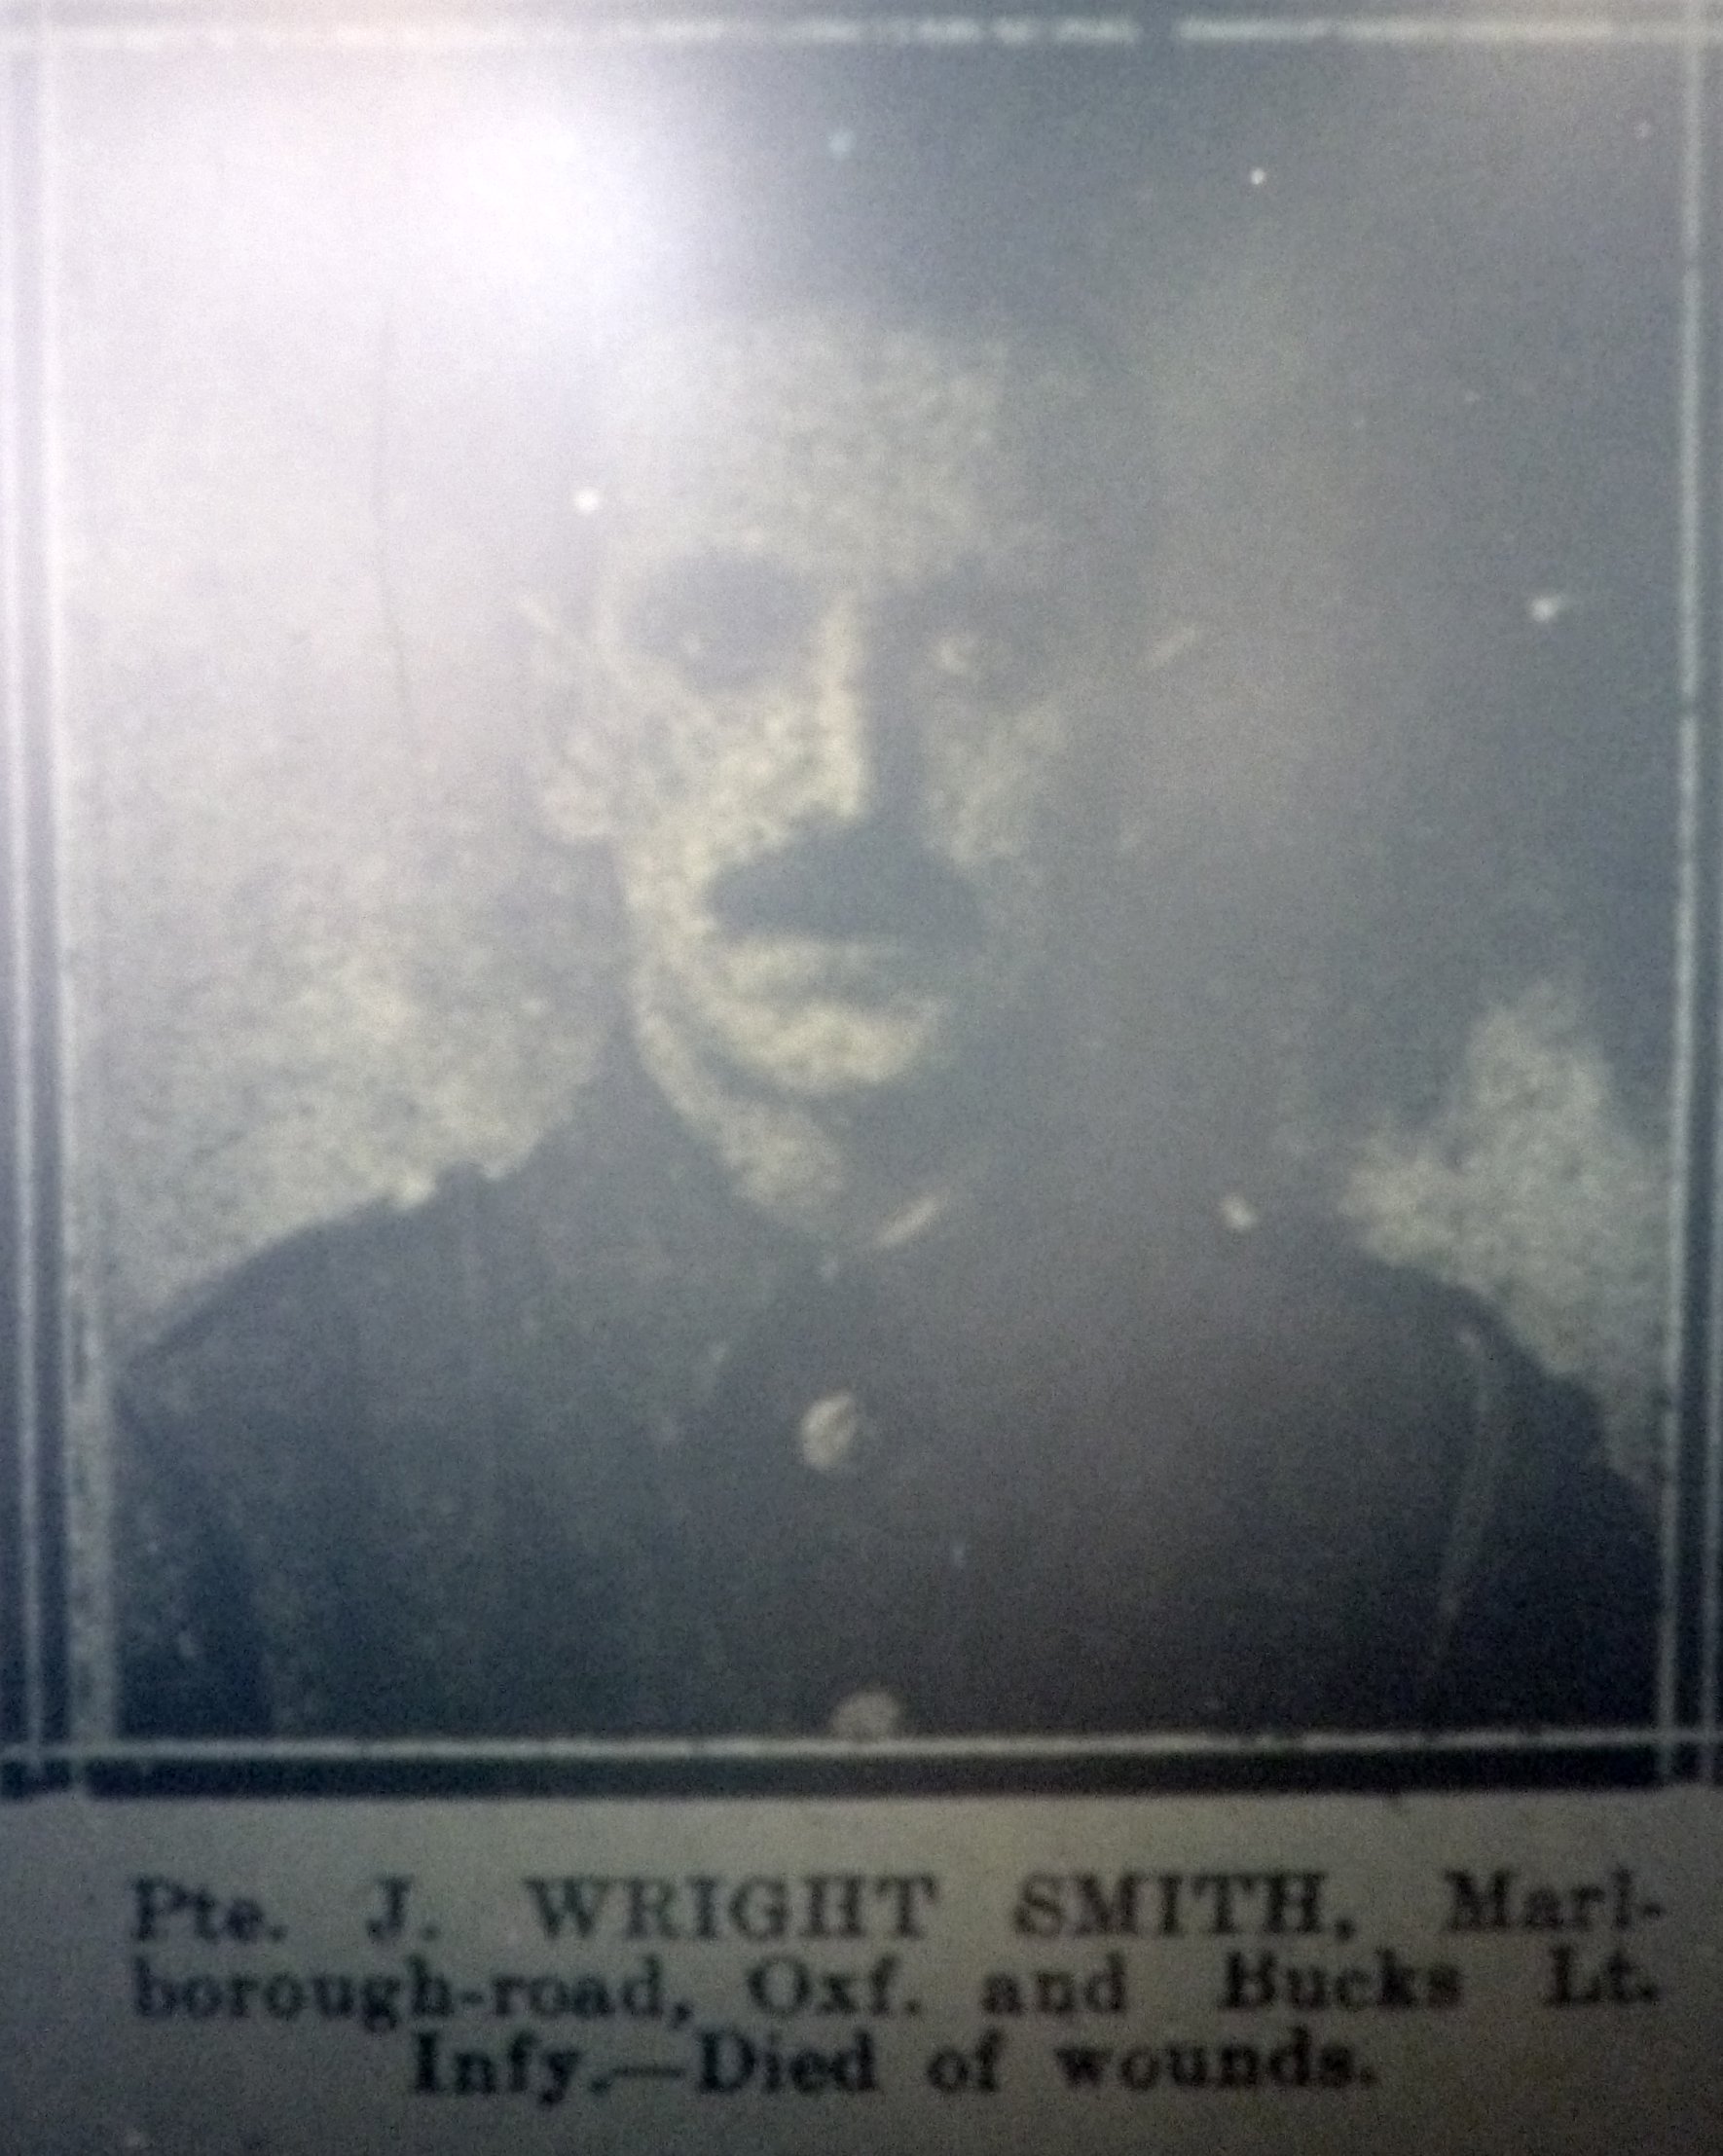 Smith JW died of wounds OJI 30-08-1916 p.7